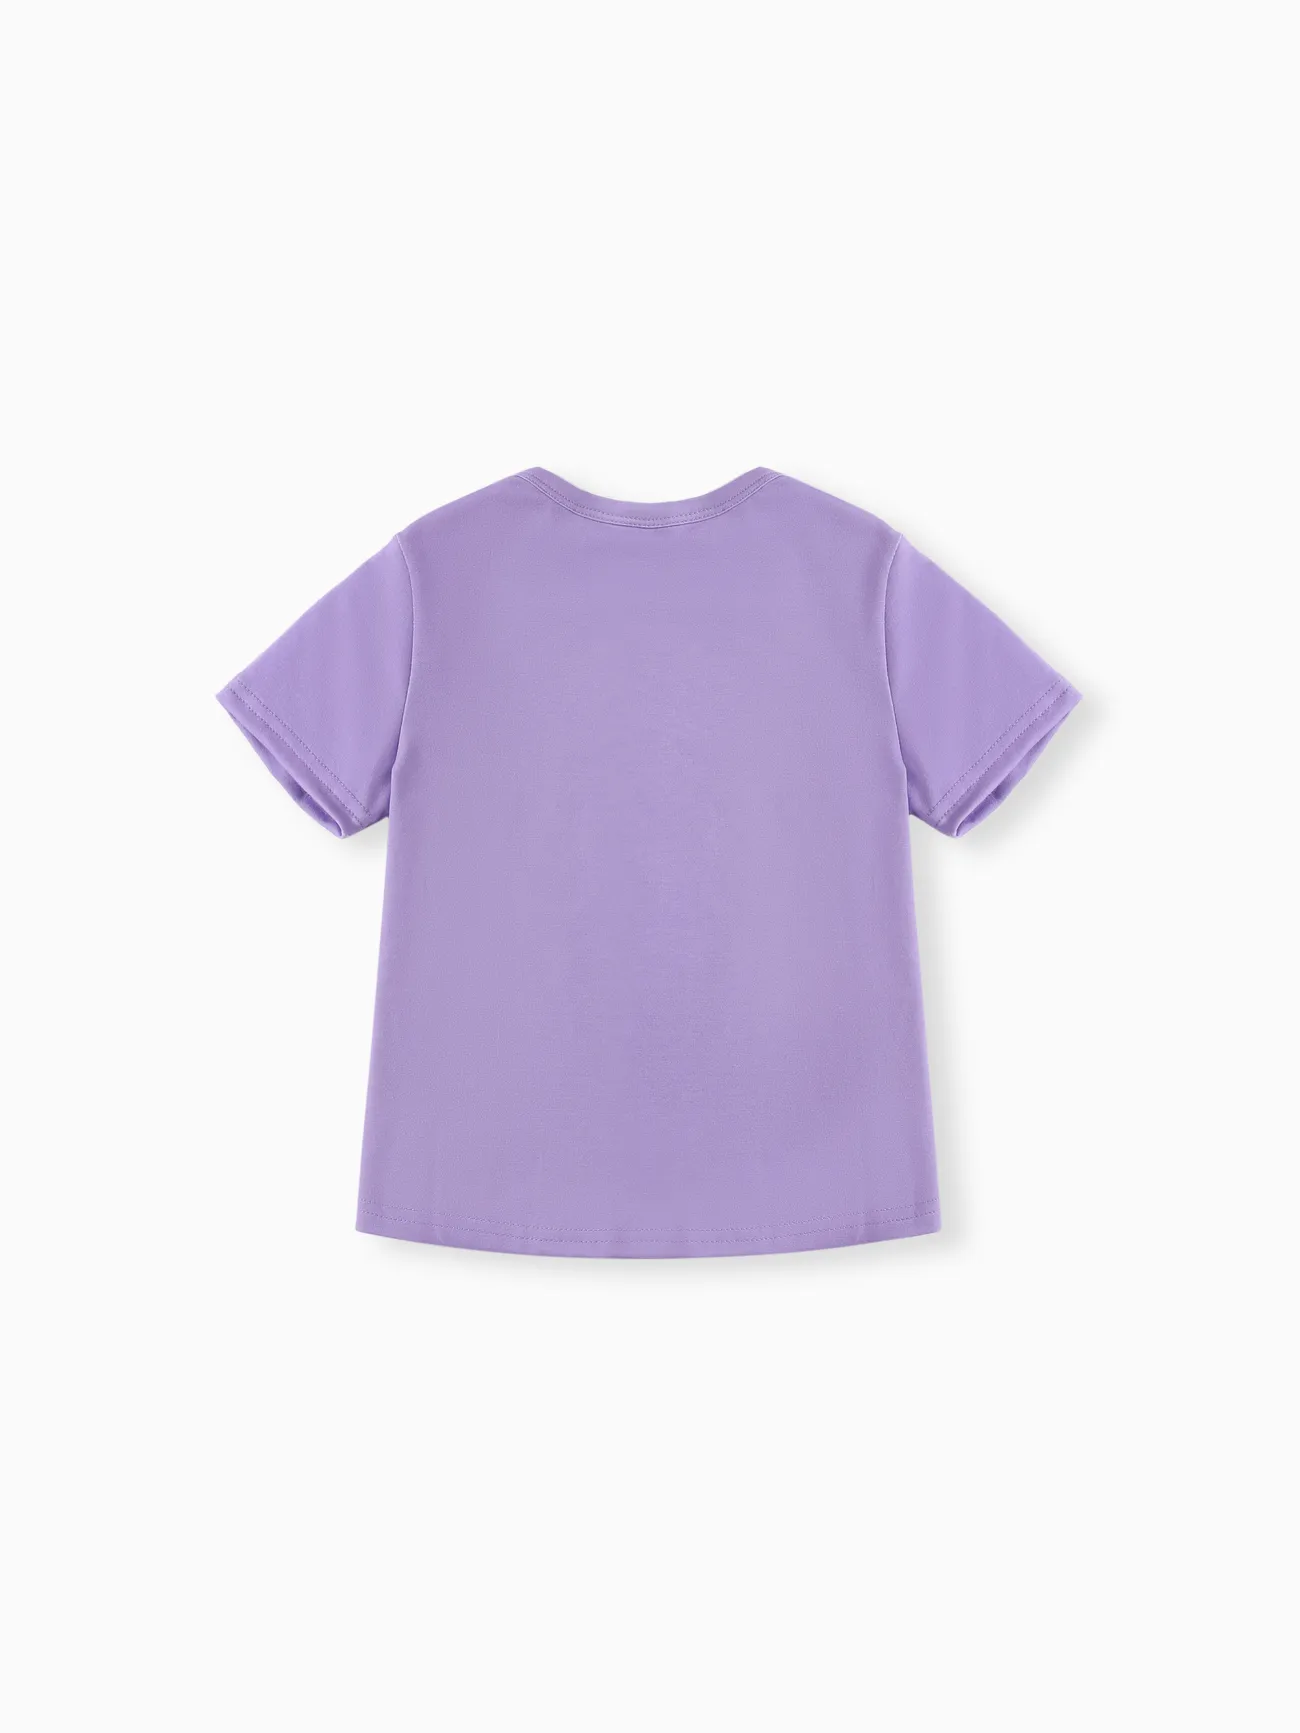 迪士尼冰雪奇緣 小童 女 童趣 短袖 T恤 紫色 big image 1